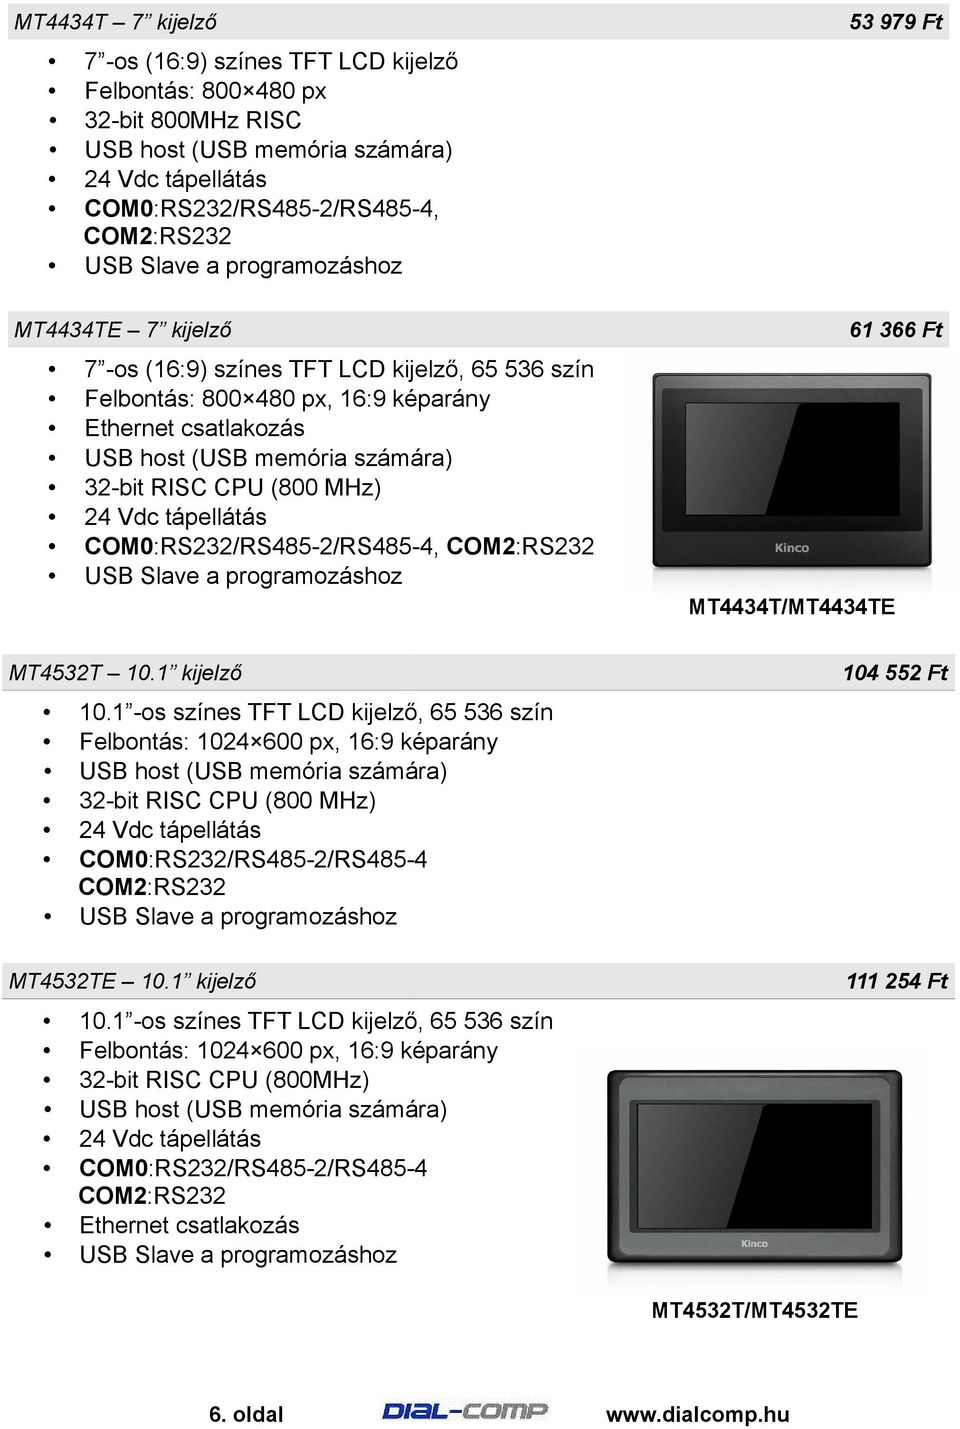 1 kijelző 10.1 -os színes TFT LCD kijelző, 65 536 szín Felbontás: 1024 600 px, 16:9 képarány 32-bit RISC CPU (800 MHz) COM0:RS232/RS485-2/RS485-4 COM2:RS232 104 552 Ft MT4532TE 10.